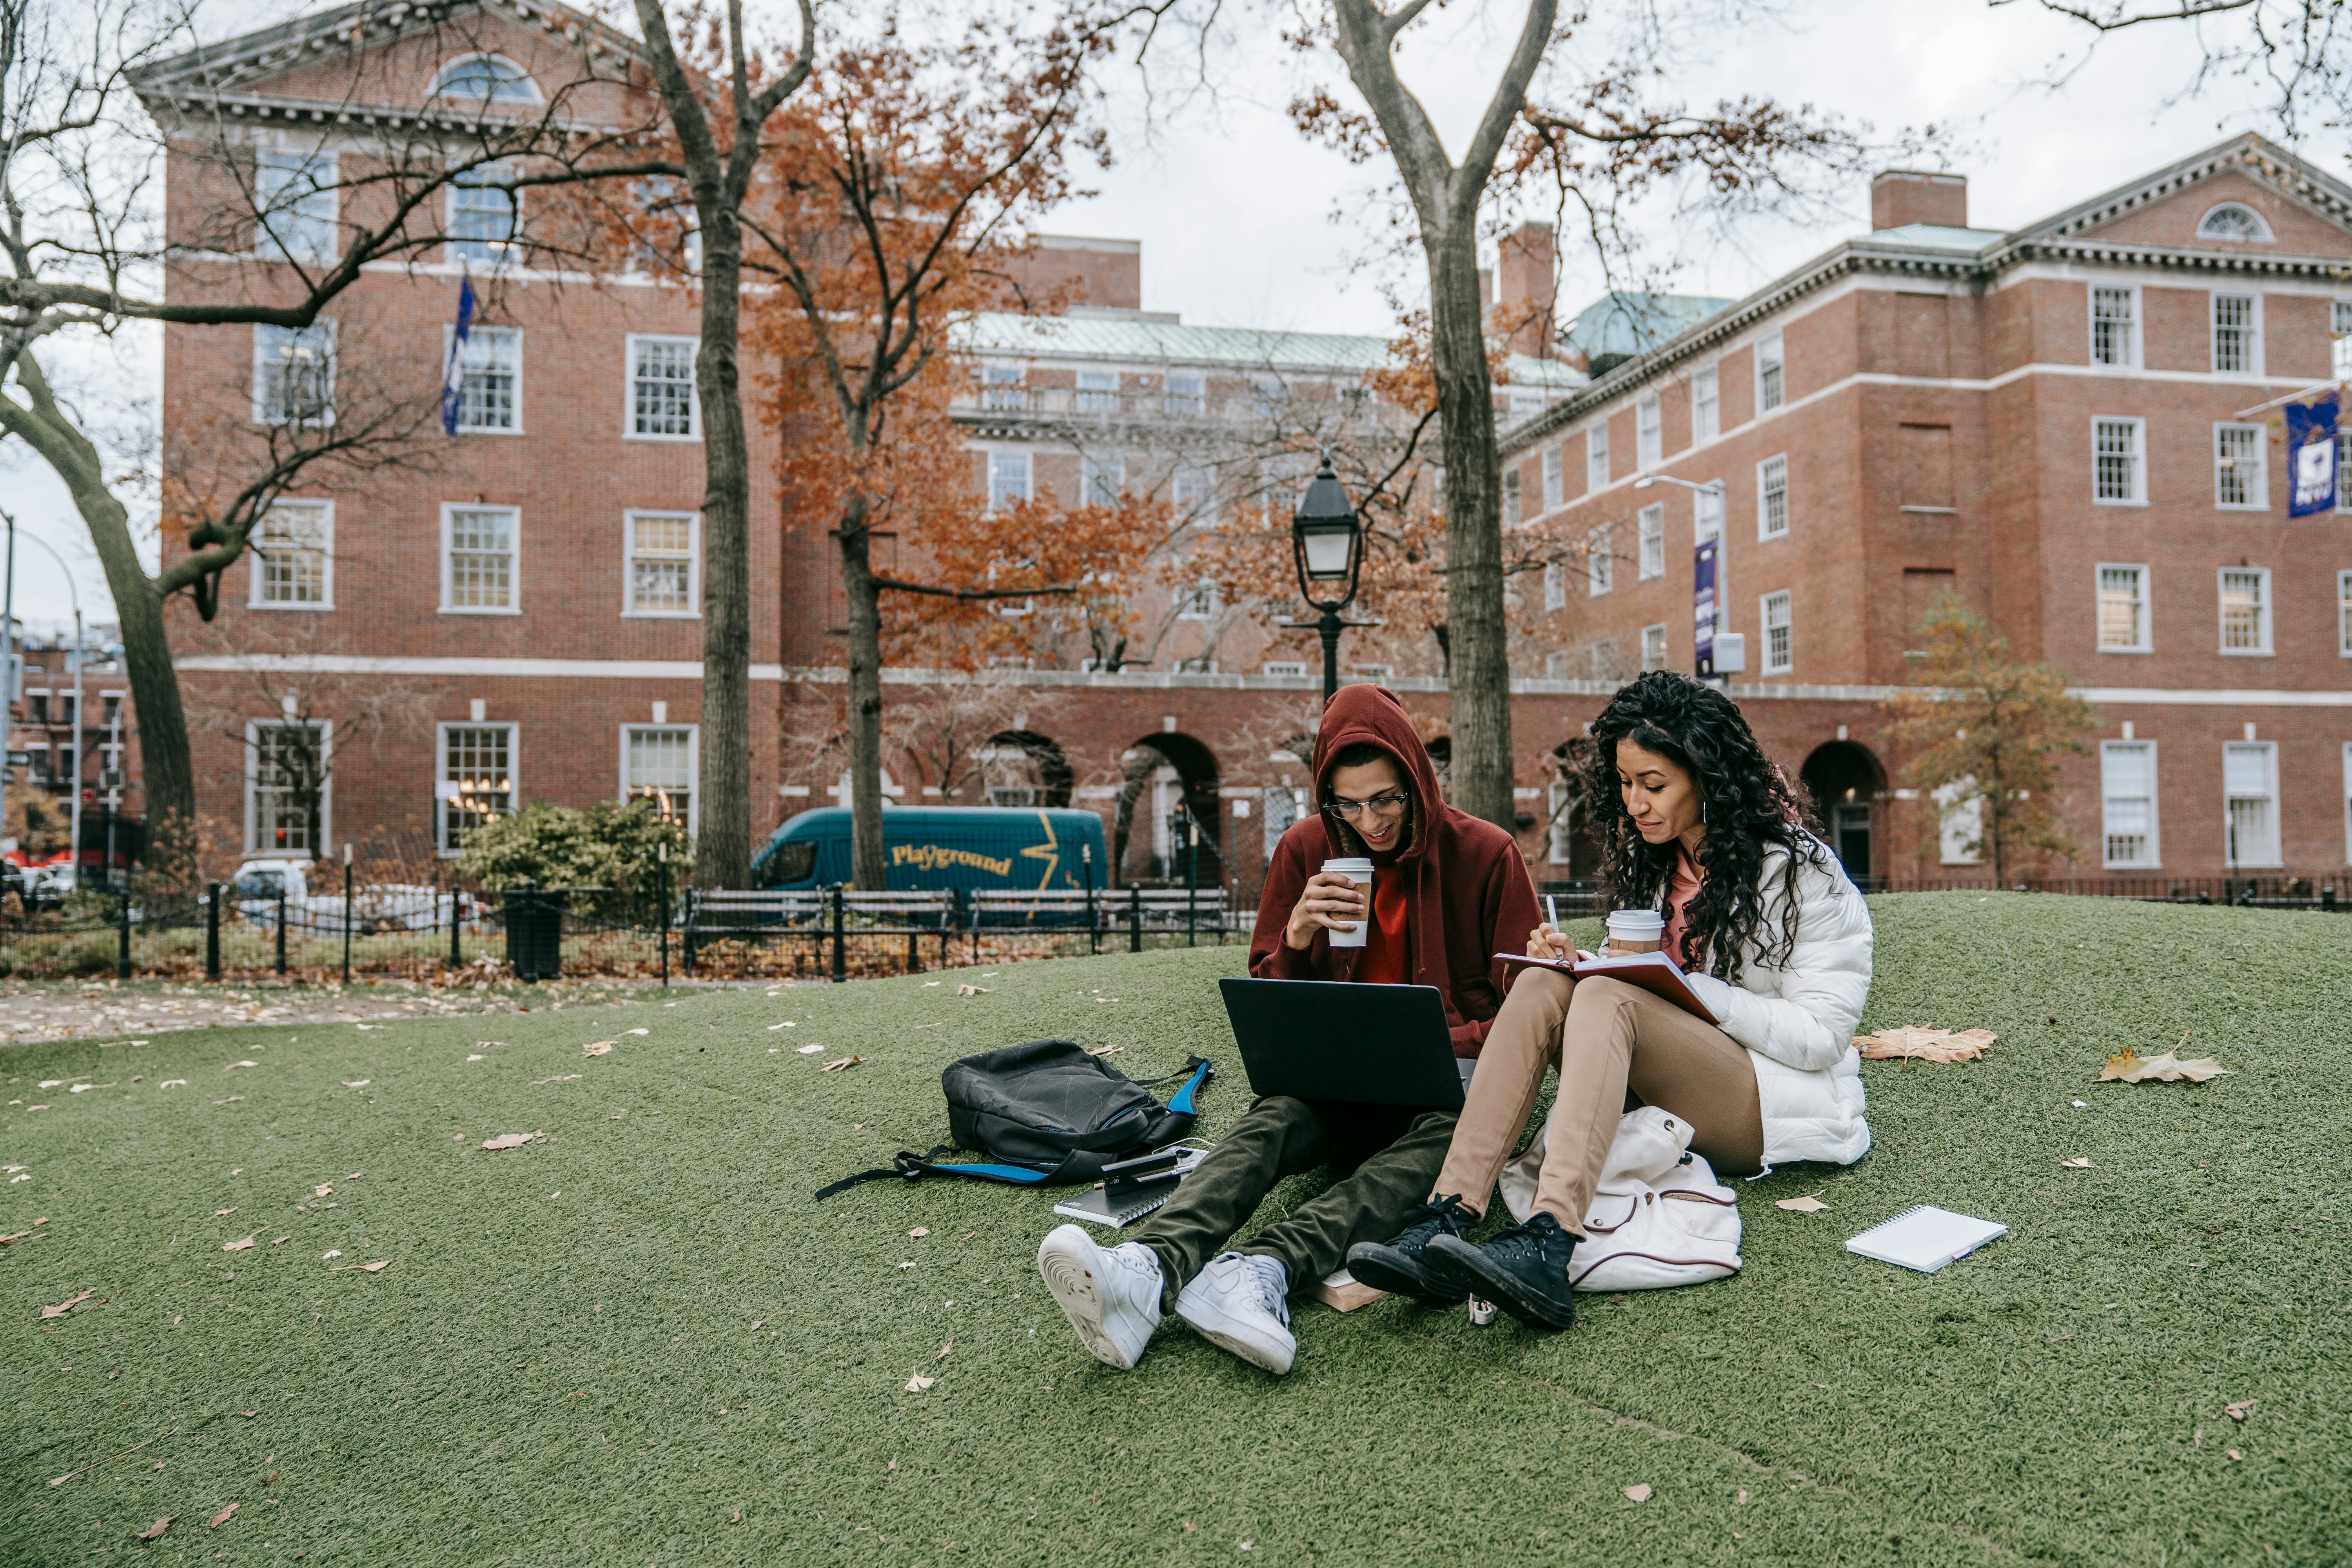 Des collégiens en train d'étudier dans un parc | Source : Pexels